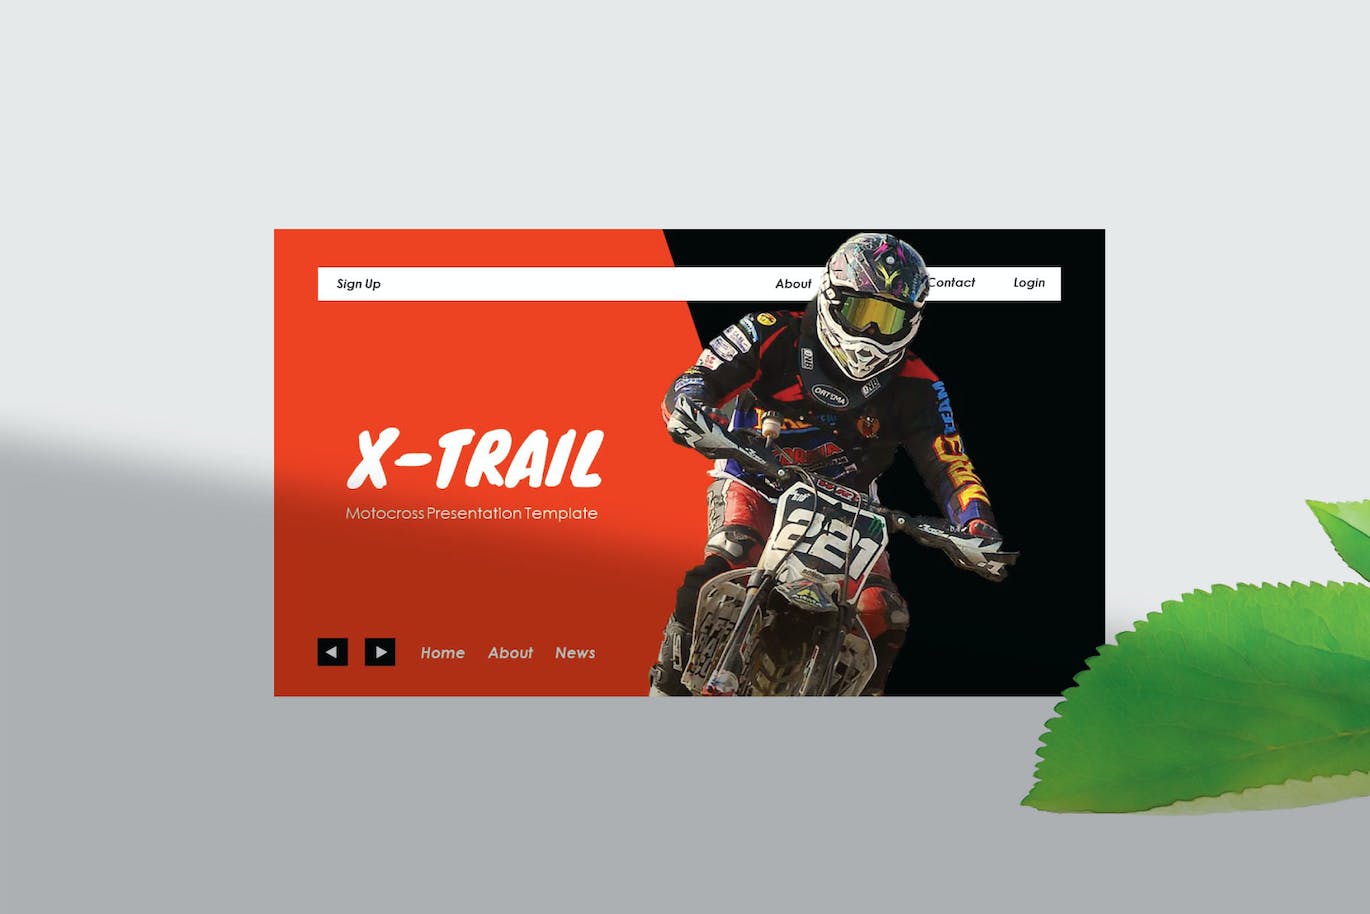 越野摩托车运动PPT创意模板 X-Trail – PowerPoint Template 幻灯图表 第8张